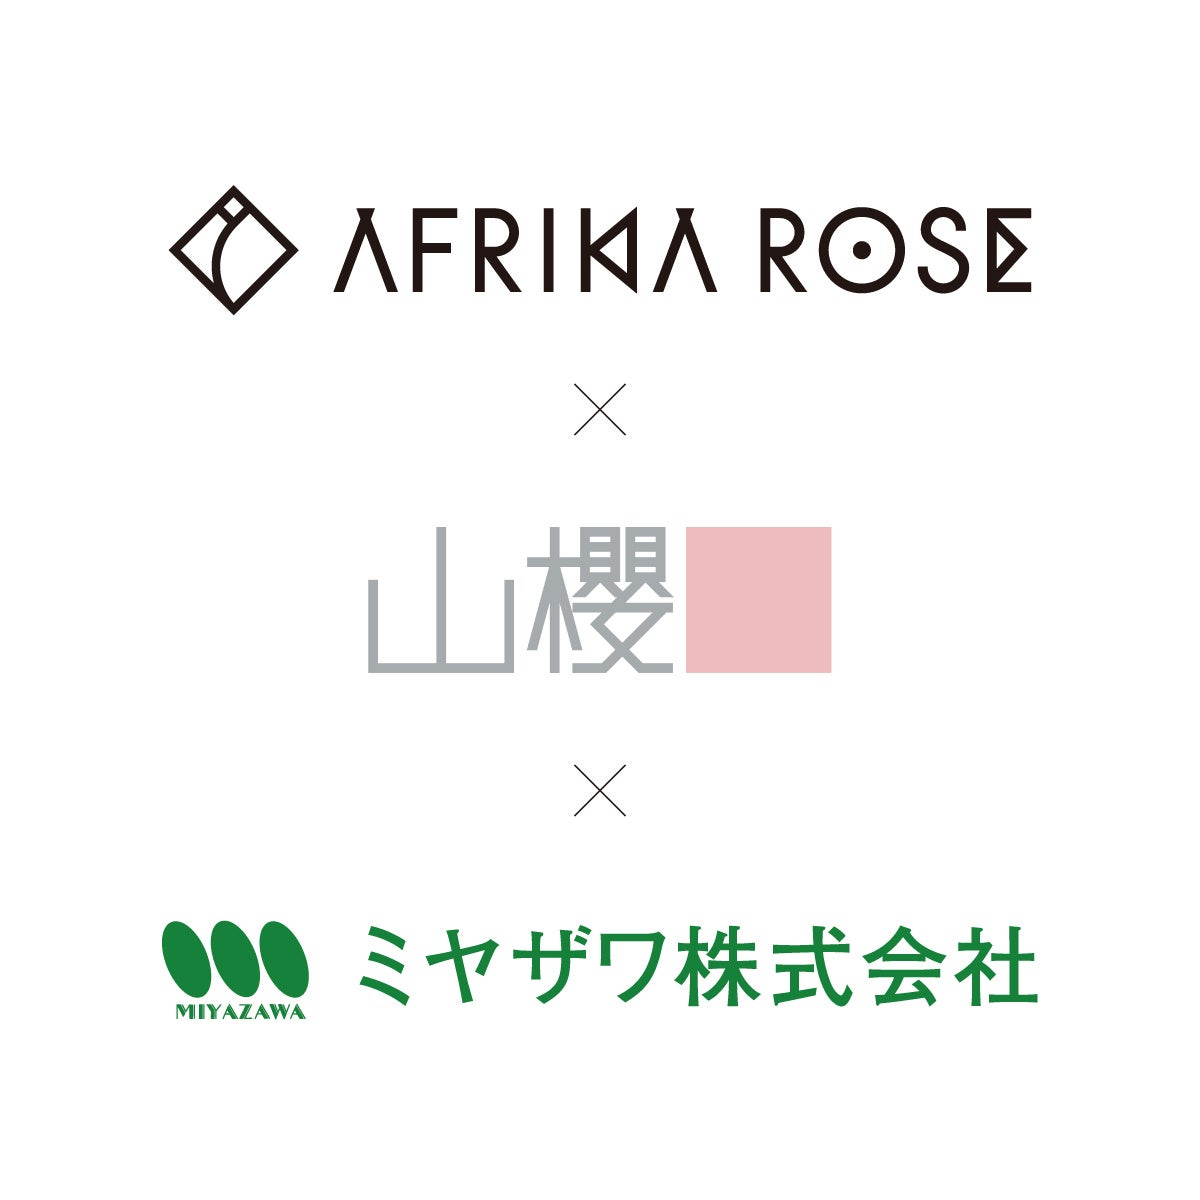 ミヤザワ× 山櫻× AFRIKA ROSE、3社が共同開発。地球環境に配慮した循環型祝い花「CELEBRATION ROSE（アフリカローズの祝いバラ）」を9月8日より発売開始。のサブ画像6